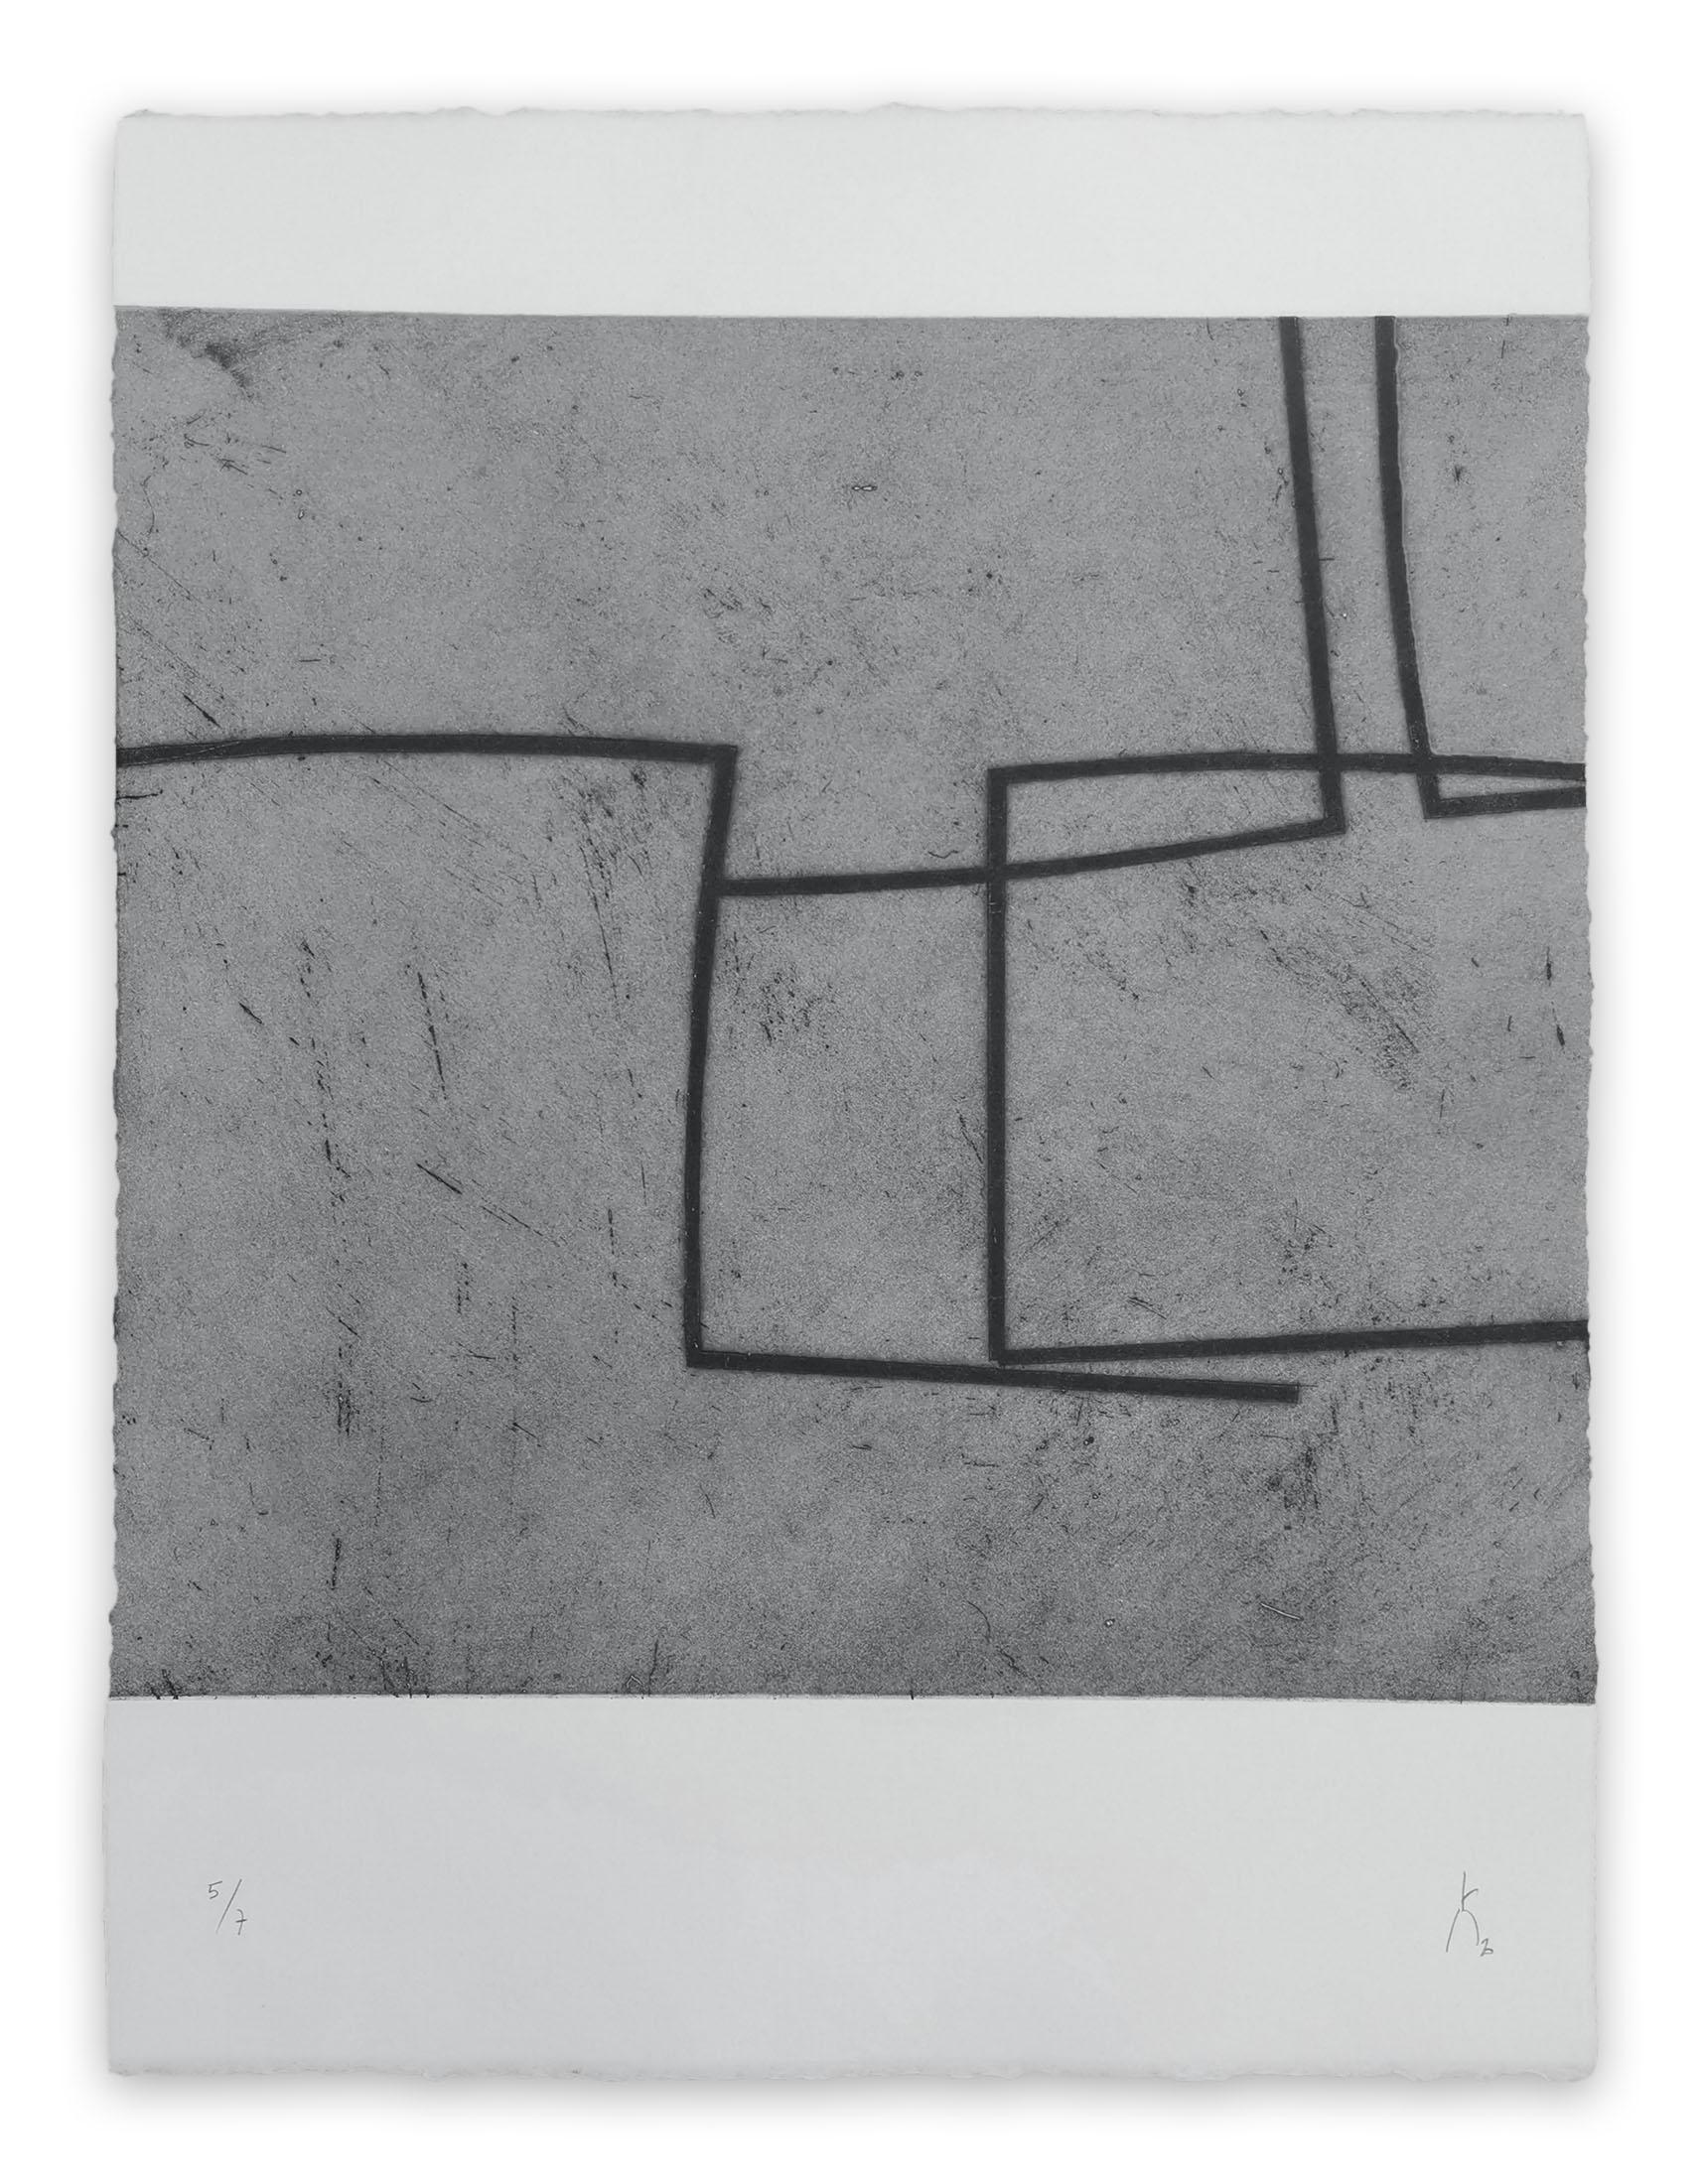 Abstract Print Pierre Muckensturm - 203R0945 (impression abstraite)